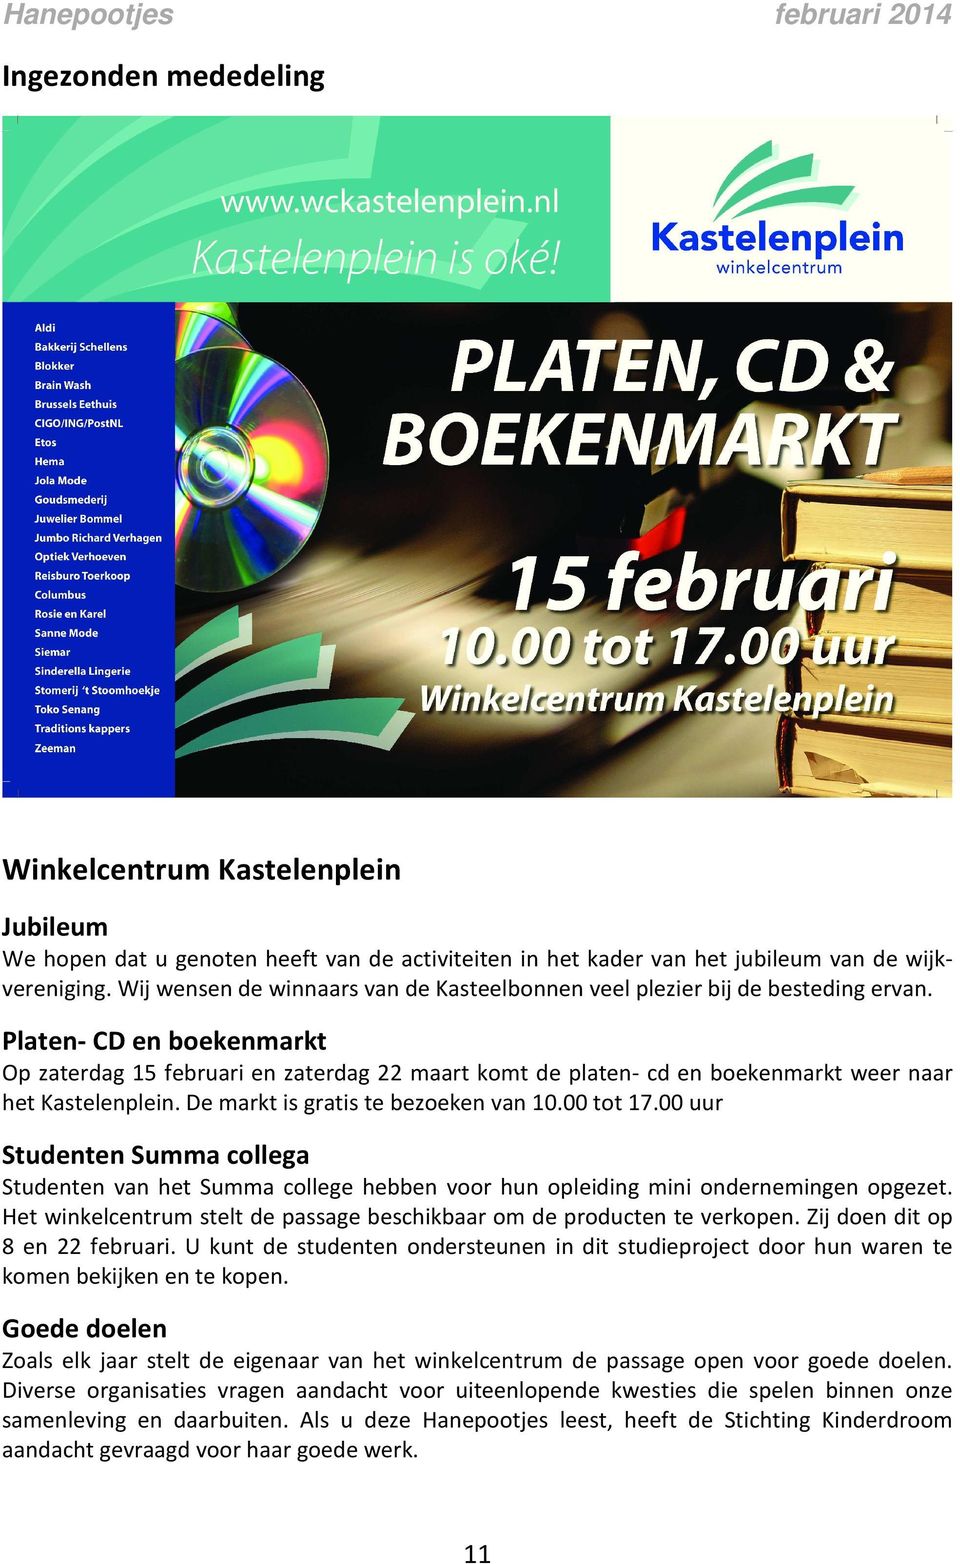 Platen- CD en boekenmarkt Op zaterdag 15 februari en zaterdag 22 maart komt de platen- cd en boekenmarkt weer naar het Kastelenplein. De markt is gratis te bezoeken van 10.00 tot 17.